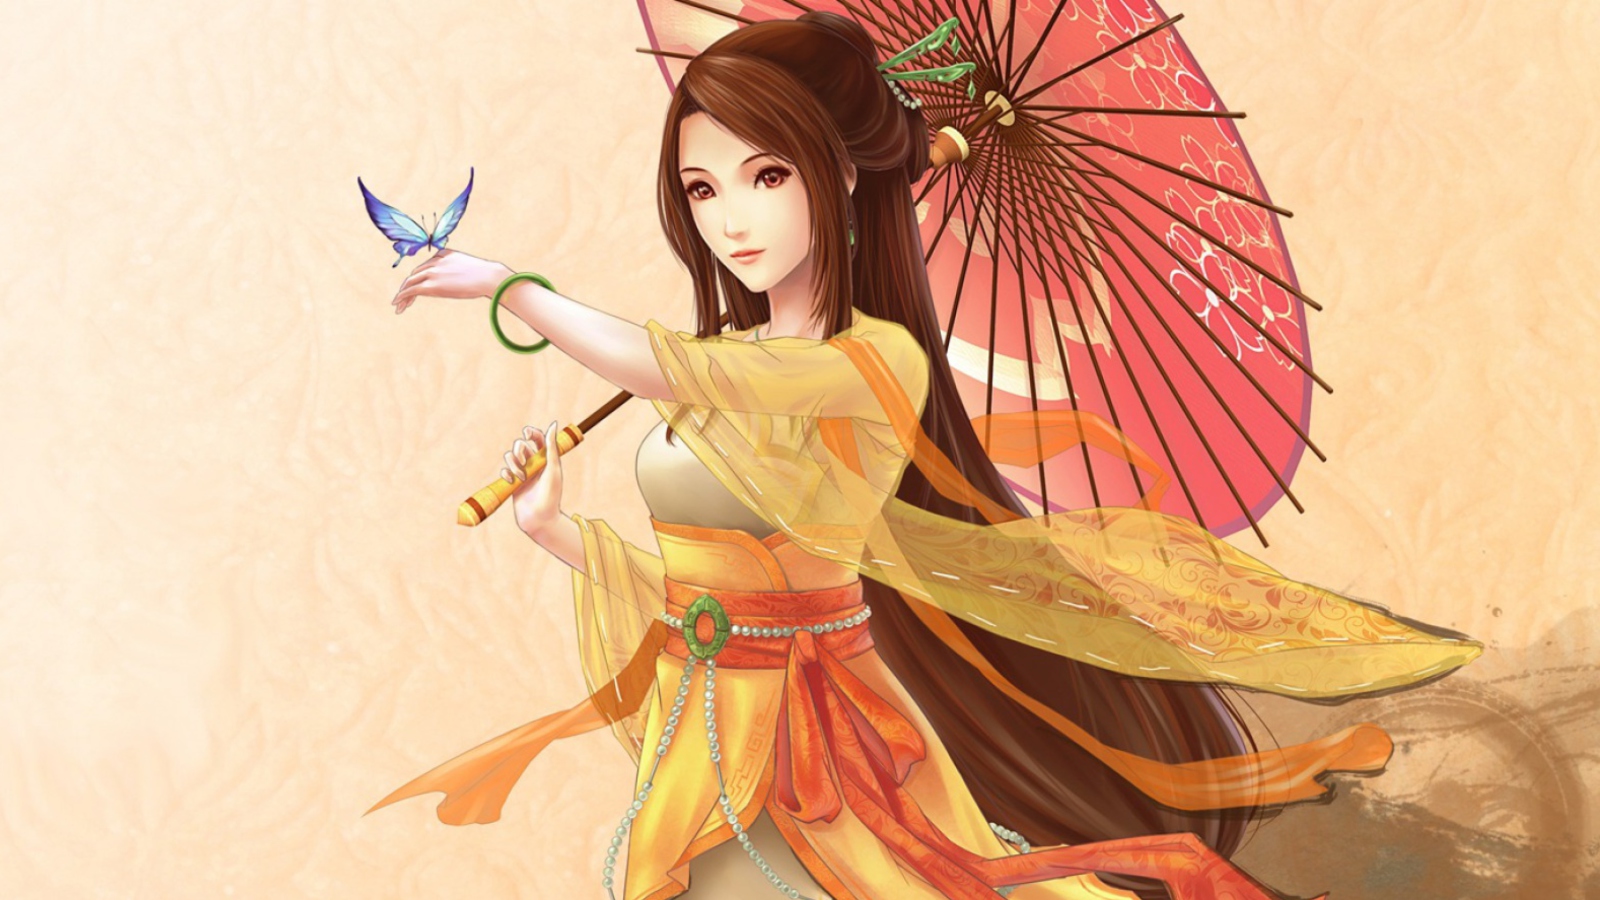 Sfondi Japanese Woman & Butterfly 1600x900